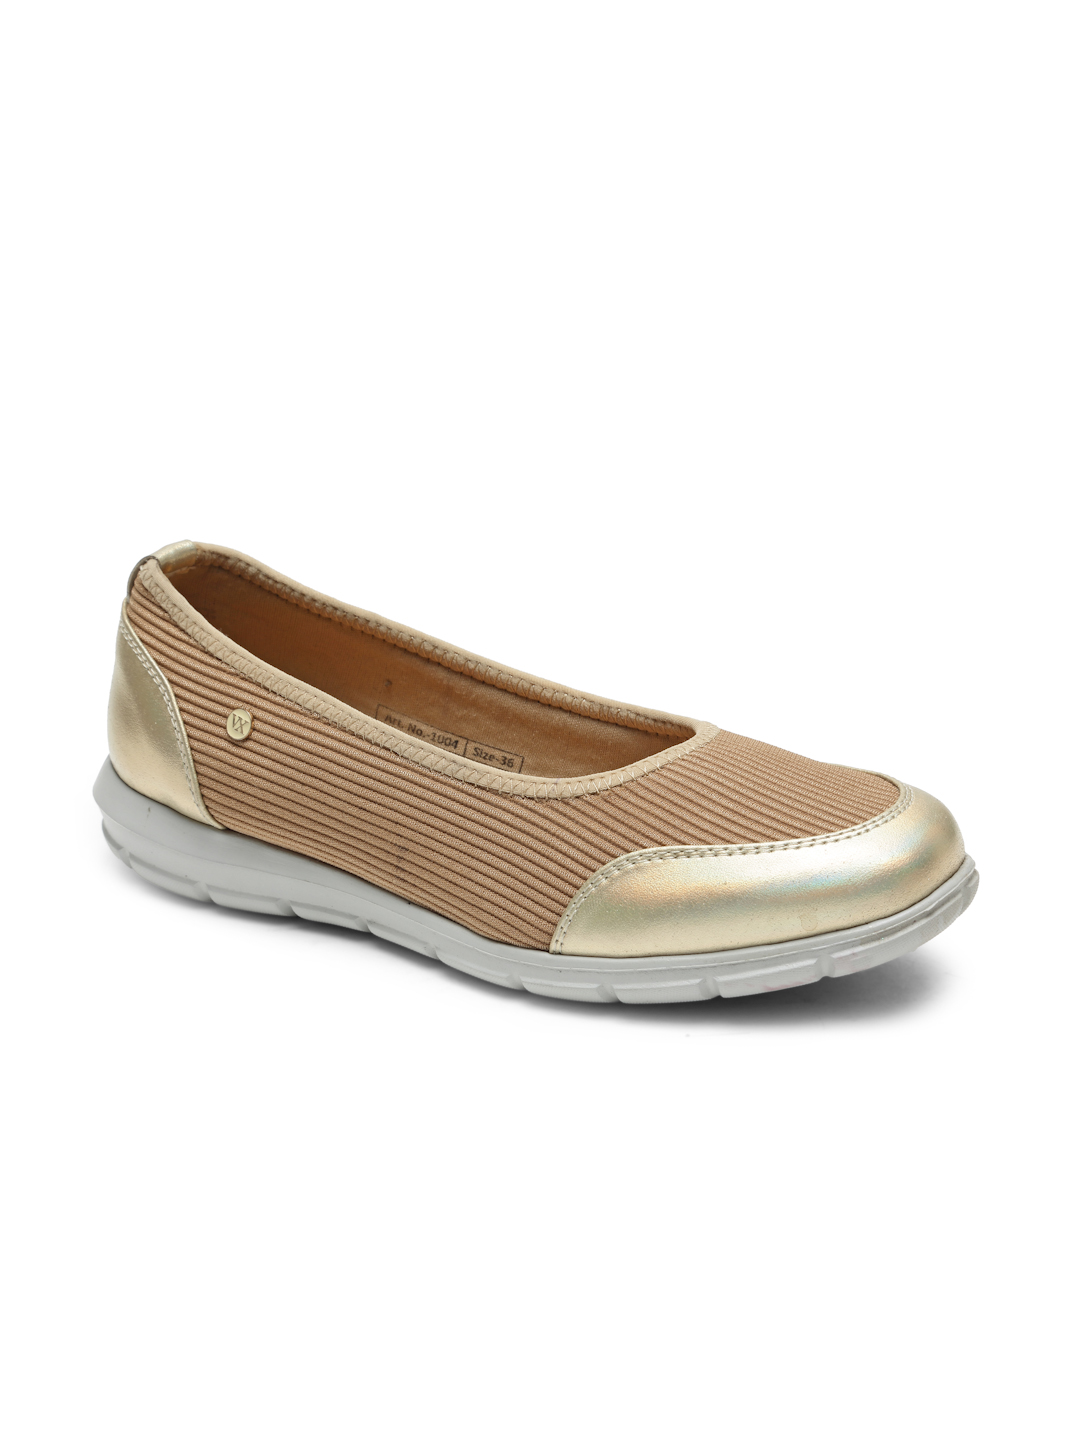 Buy Von Wellx Germany Comfort Women's Beige Casual Shoes Alice Online in Madhya Pradesh